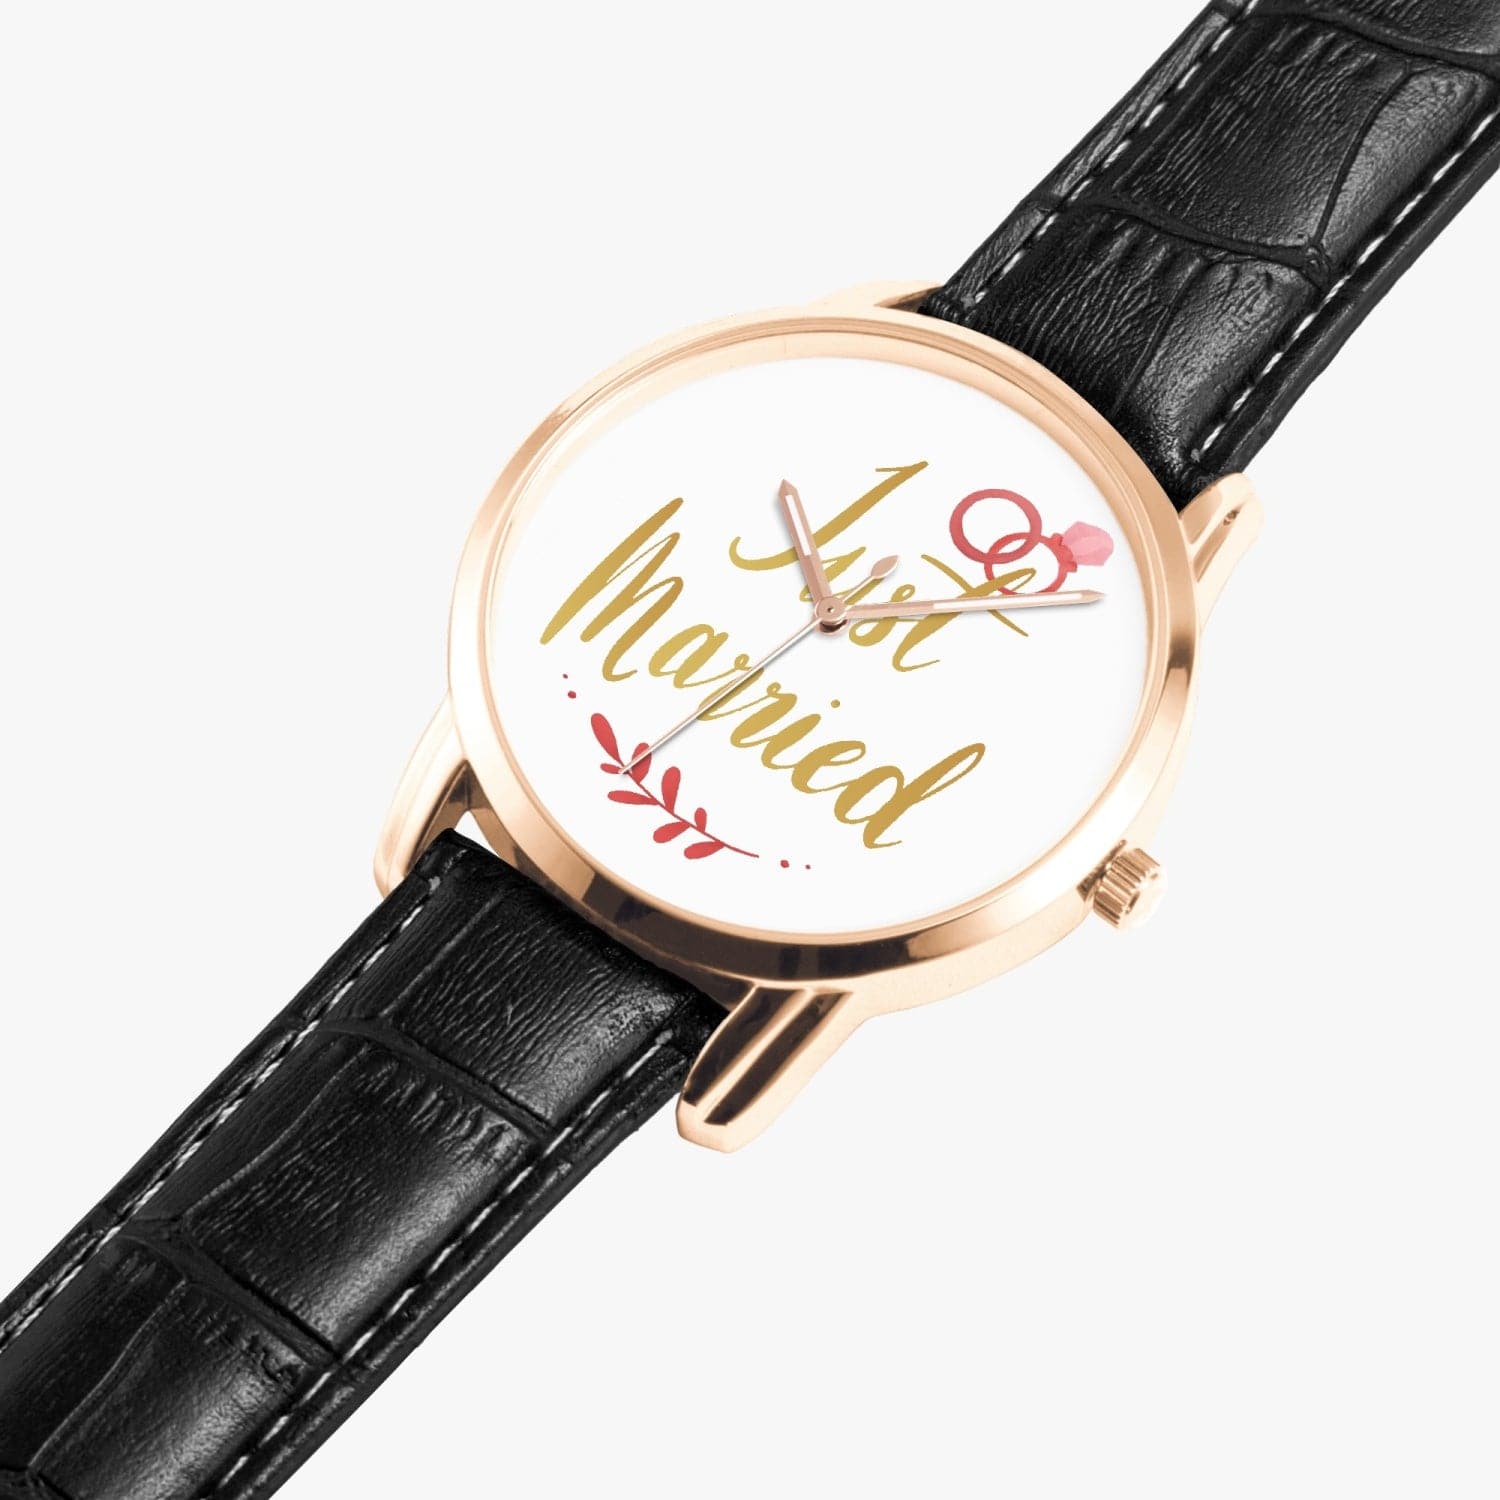 Just Married, Wedding gift,  Instafamous Wide Type Quartz watch, by Sensus Studio Design